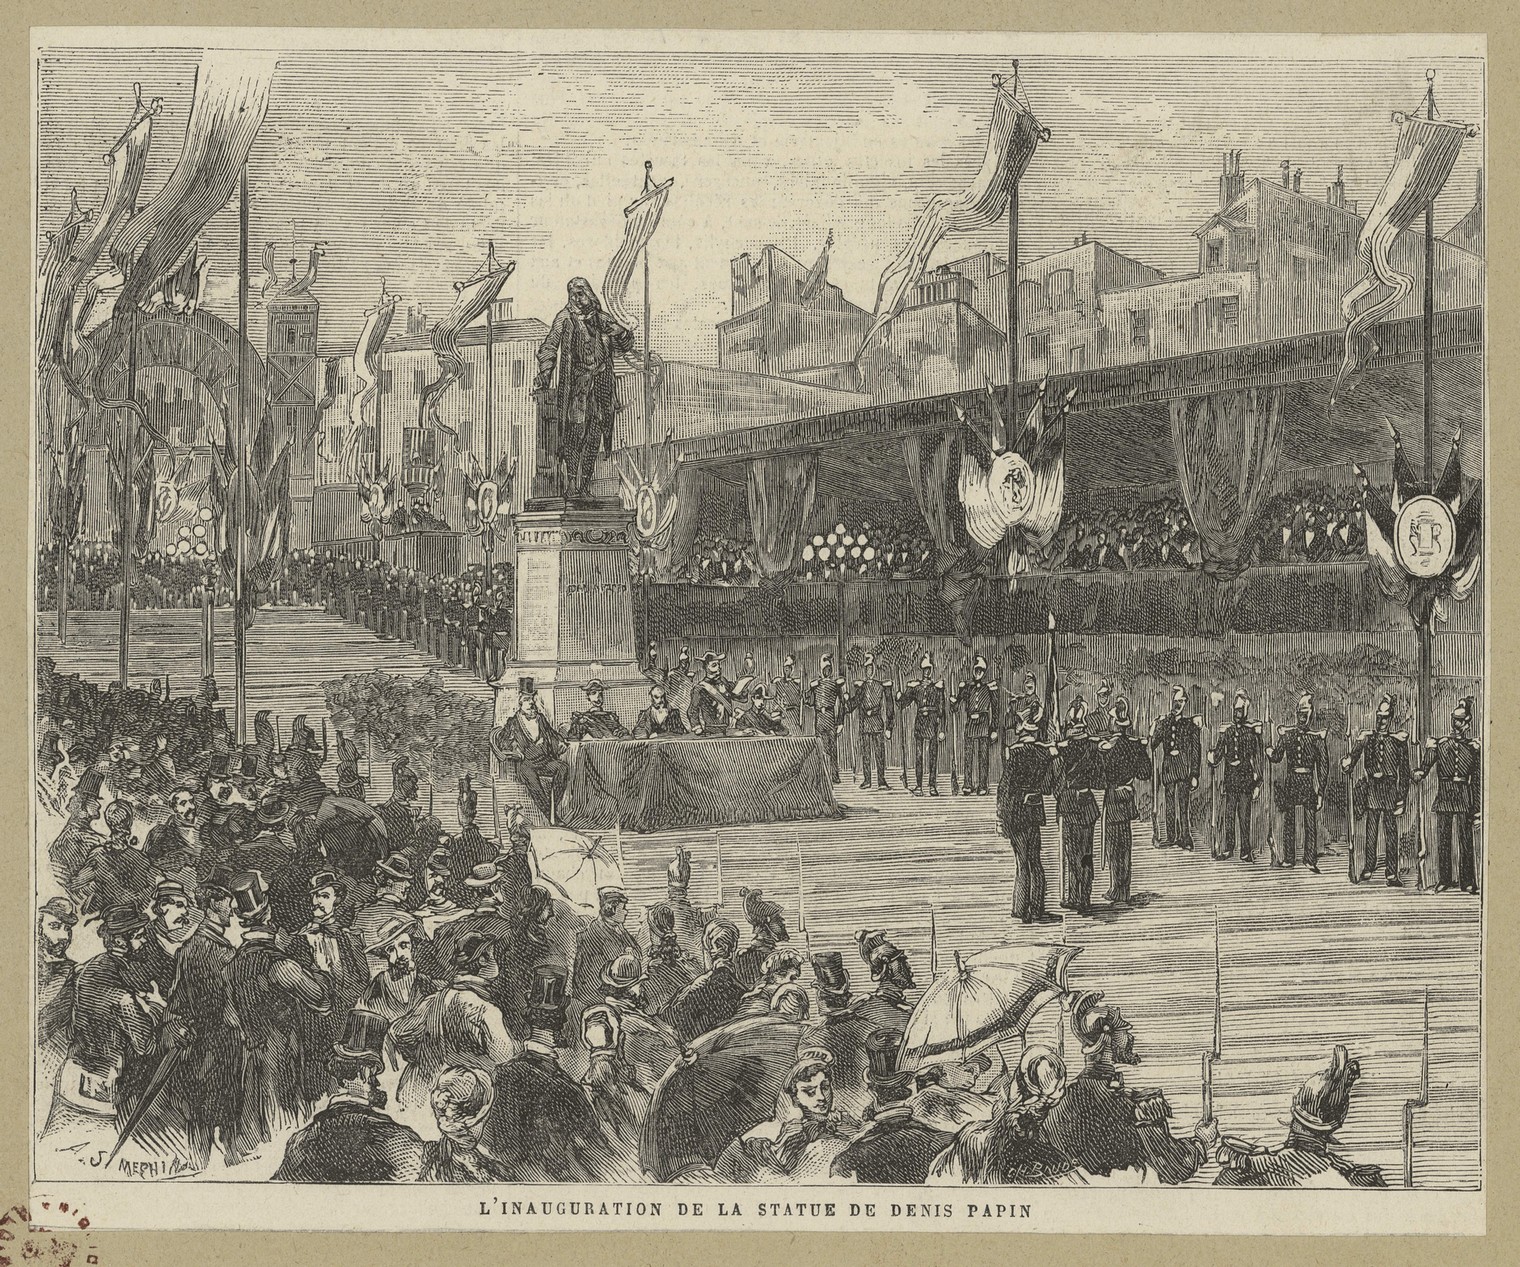 Méchin, L'inauguration de la statue de Denis Papin à Blois, le 29 août 1880, gravure sur bois